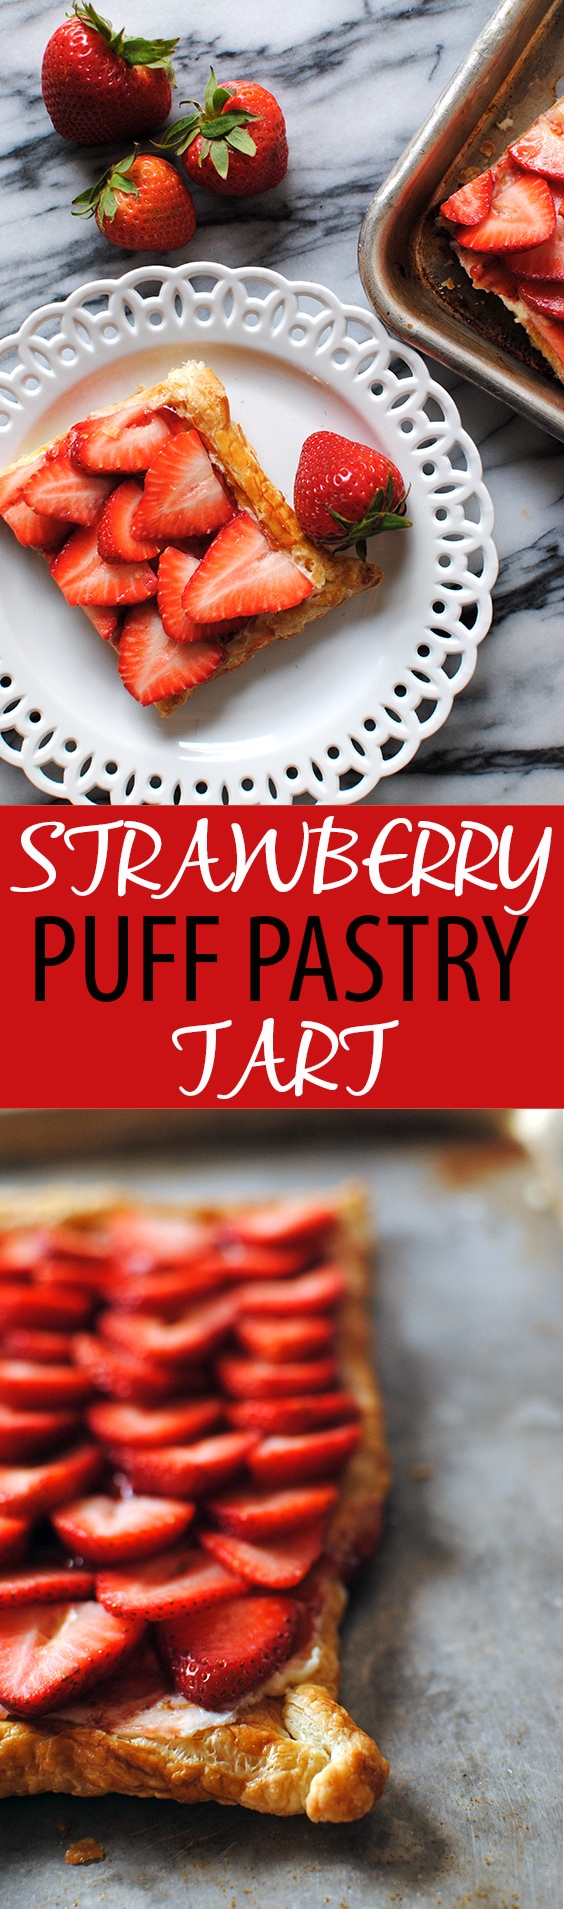 puff pastry strawberry tart